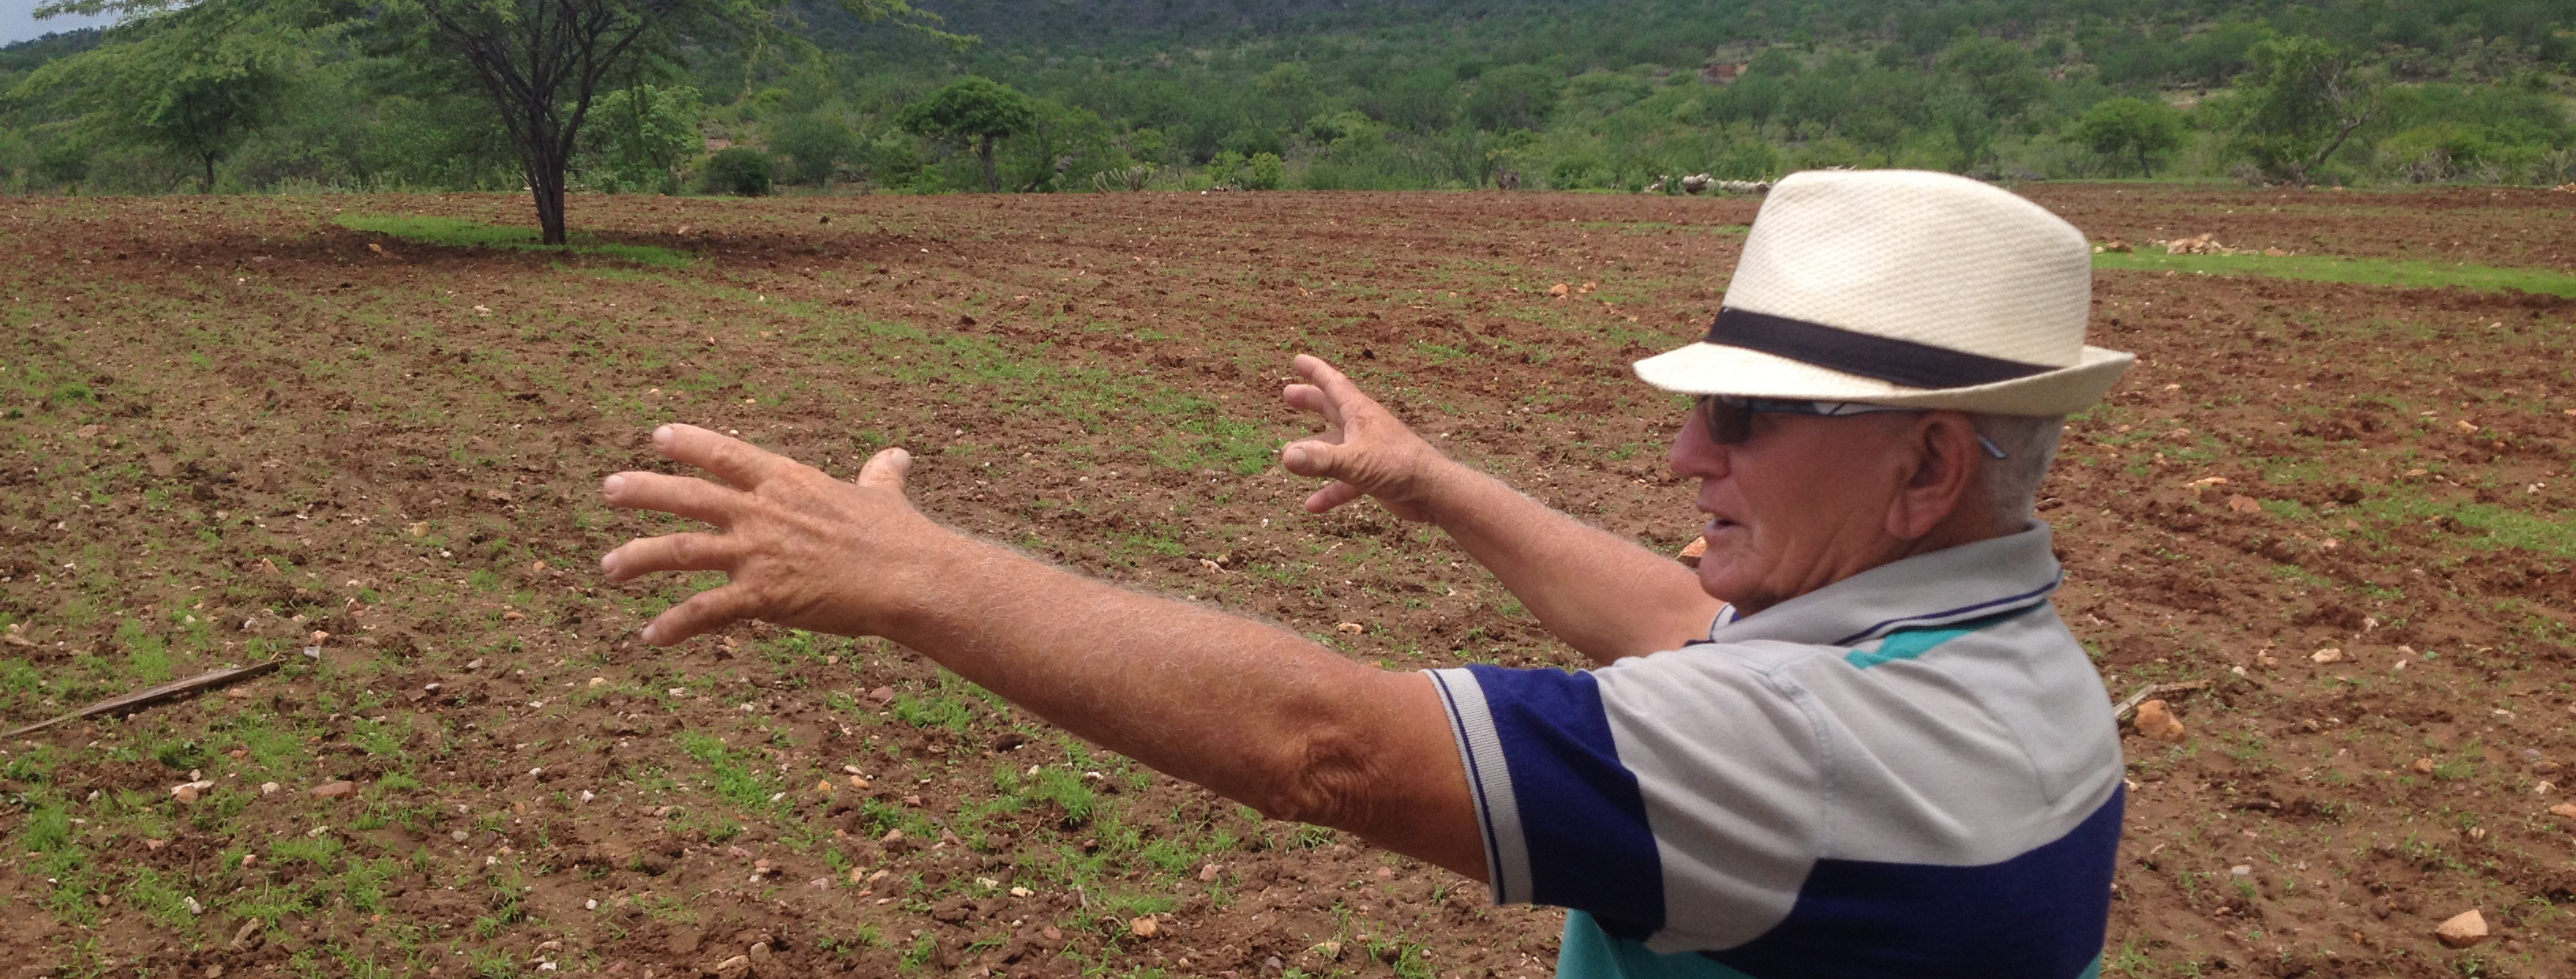 Manuel Siqueira de Melo (Lino), ADEC, explaining his organic stripe plantations, Tauá, Ceará, Brazil 2016